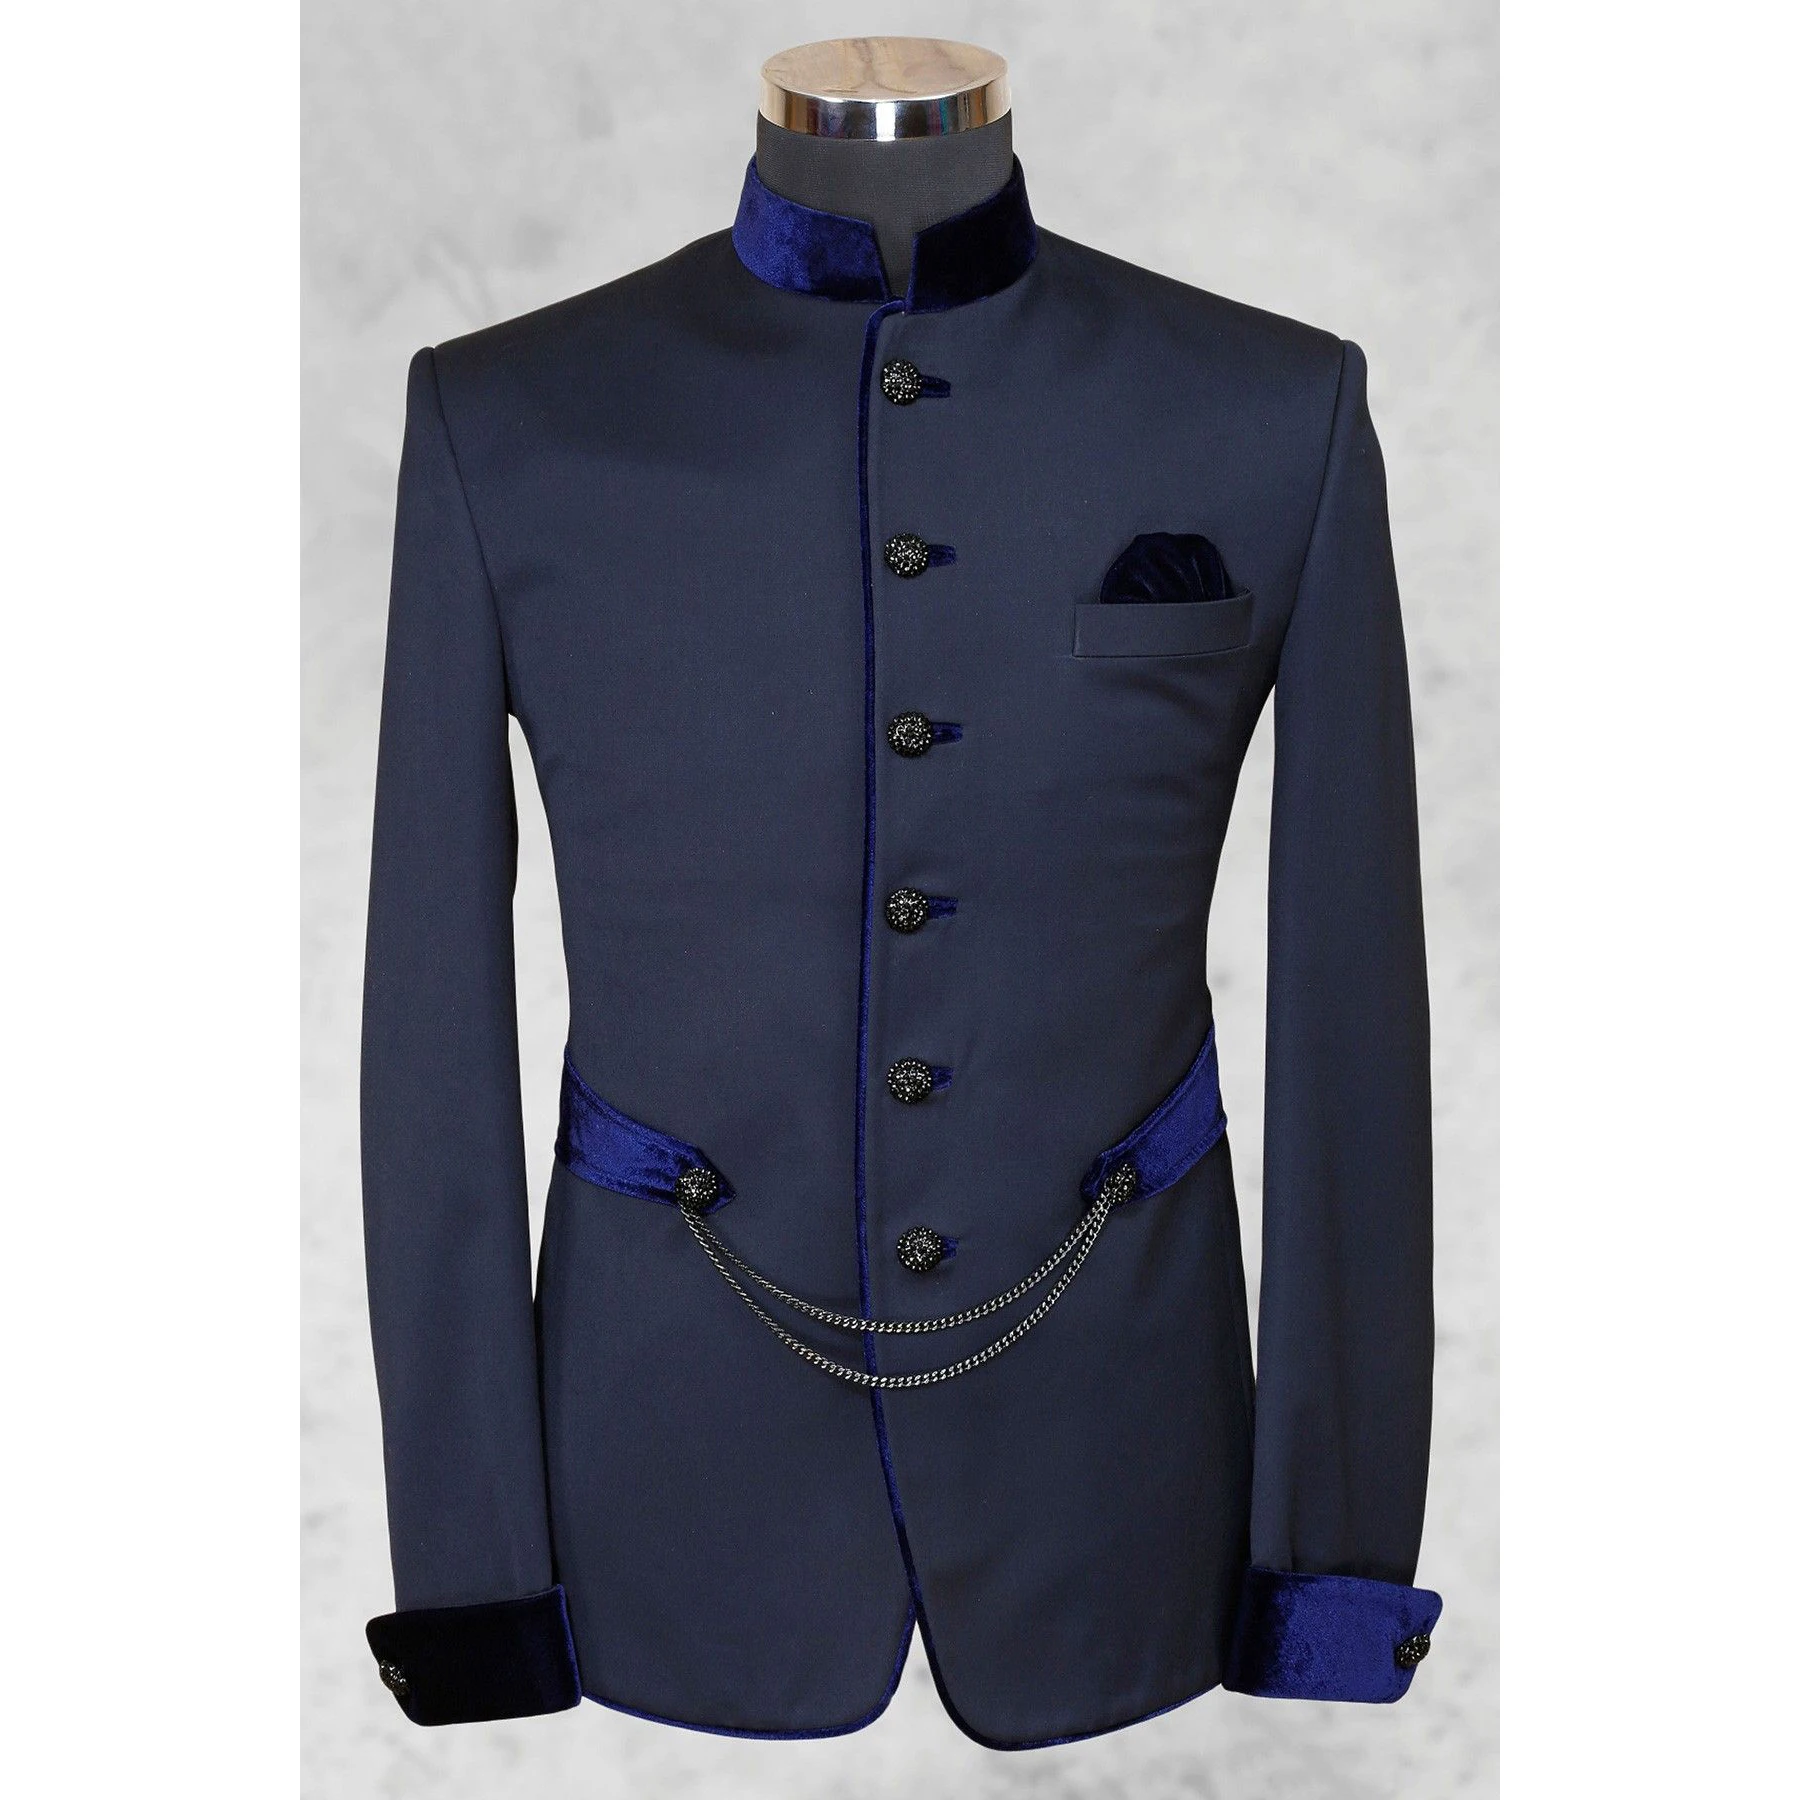 Куртка Цельная однобортная стойка Лацкан Темно-синее пальто Наряды на заказ Обычный приталенный крой Trajes Elegante Para Hombre